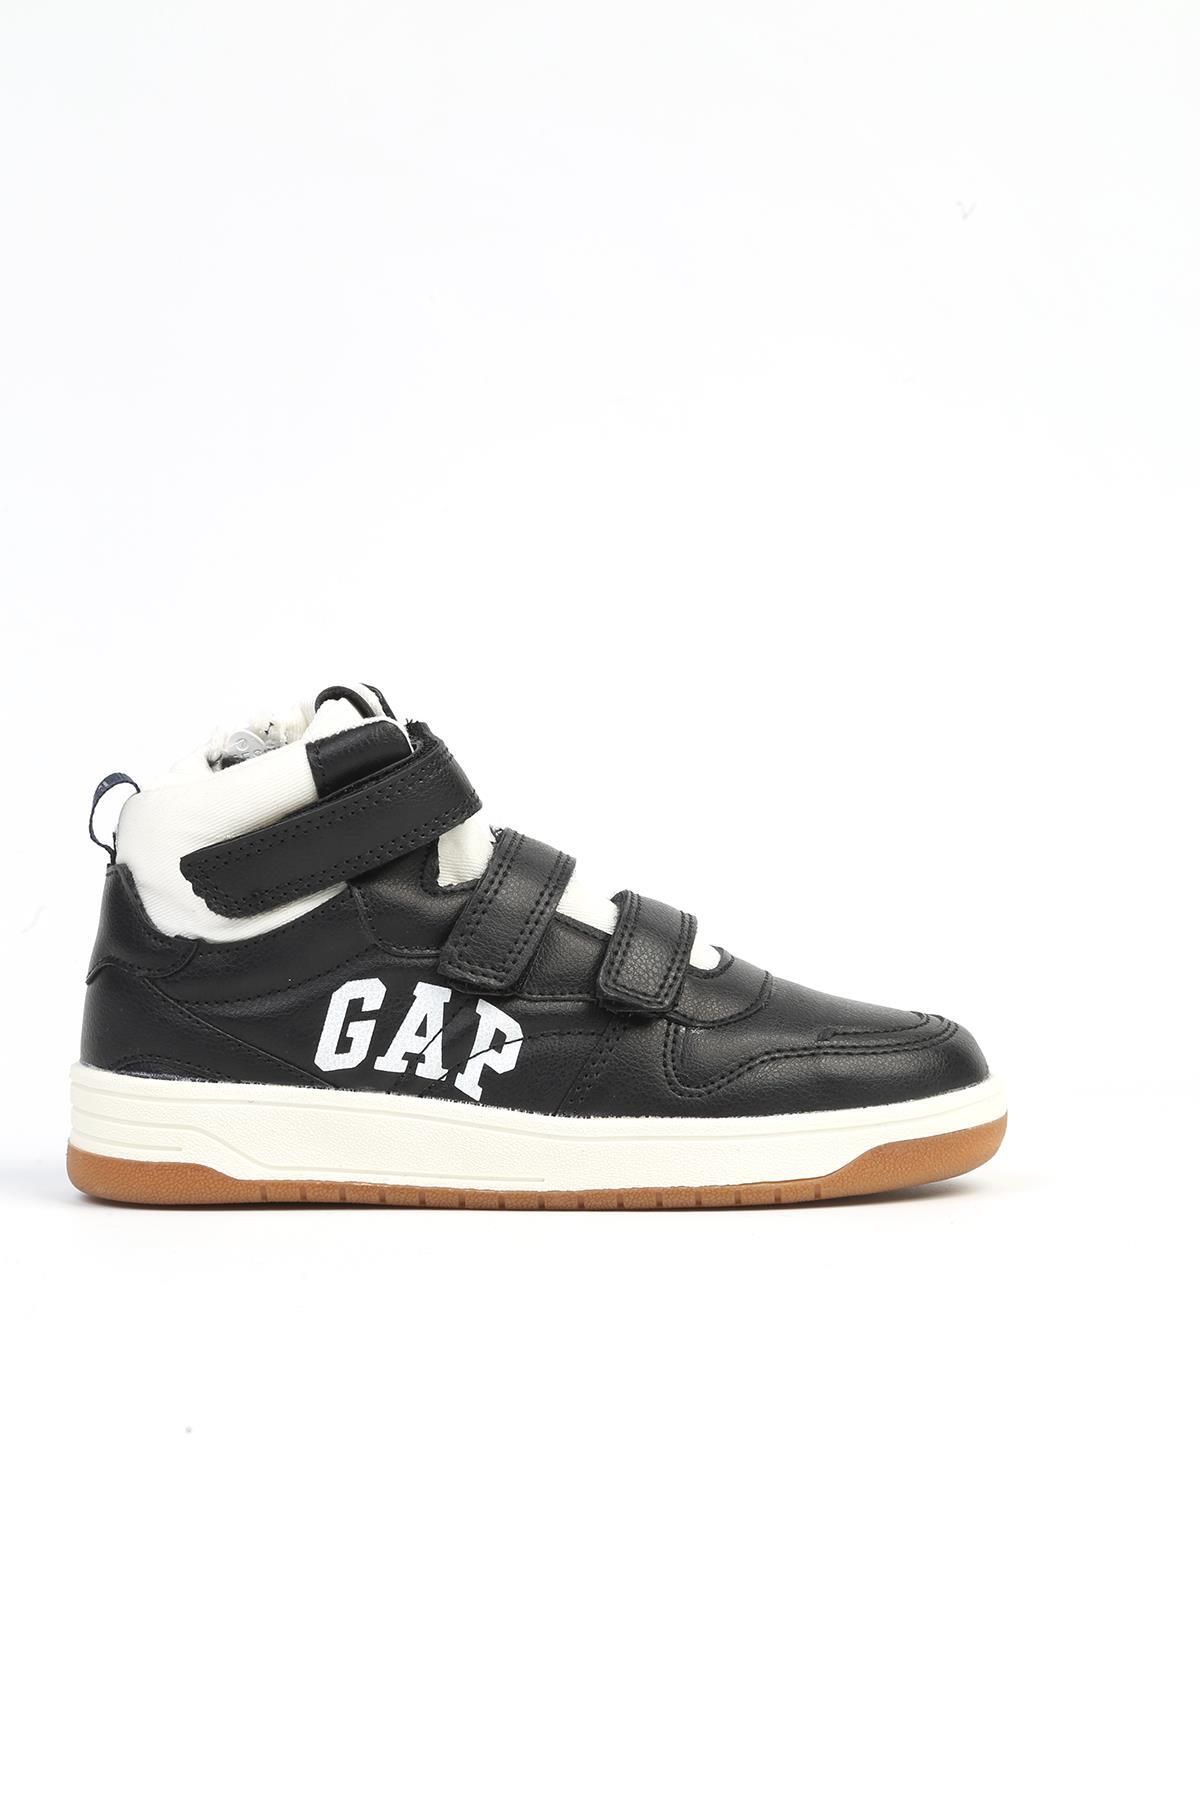 GAP ® |GP-1053 Siyah-Unisex Çocuk Spor Ayakkabı